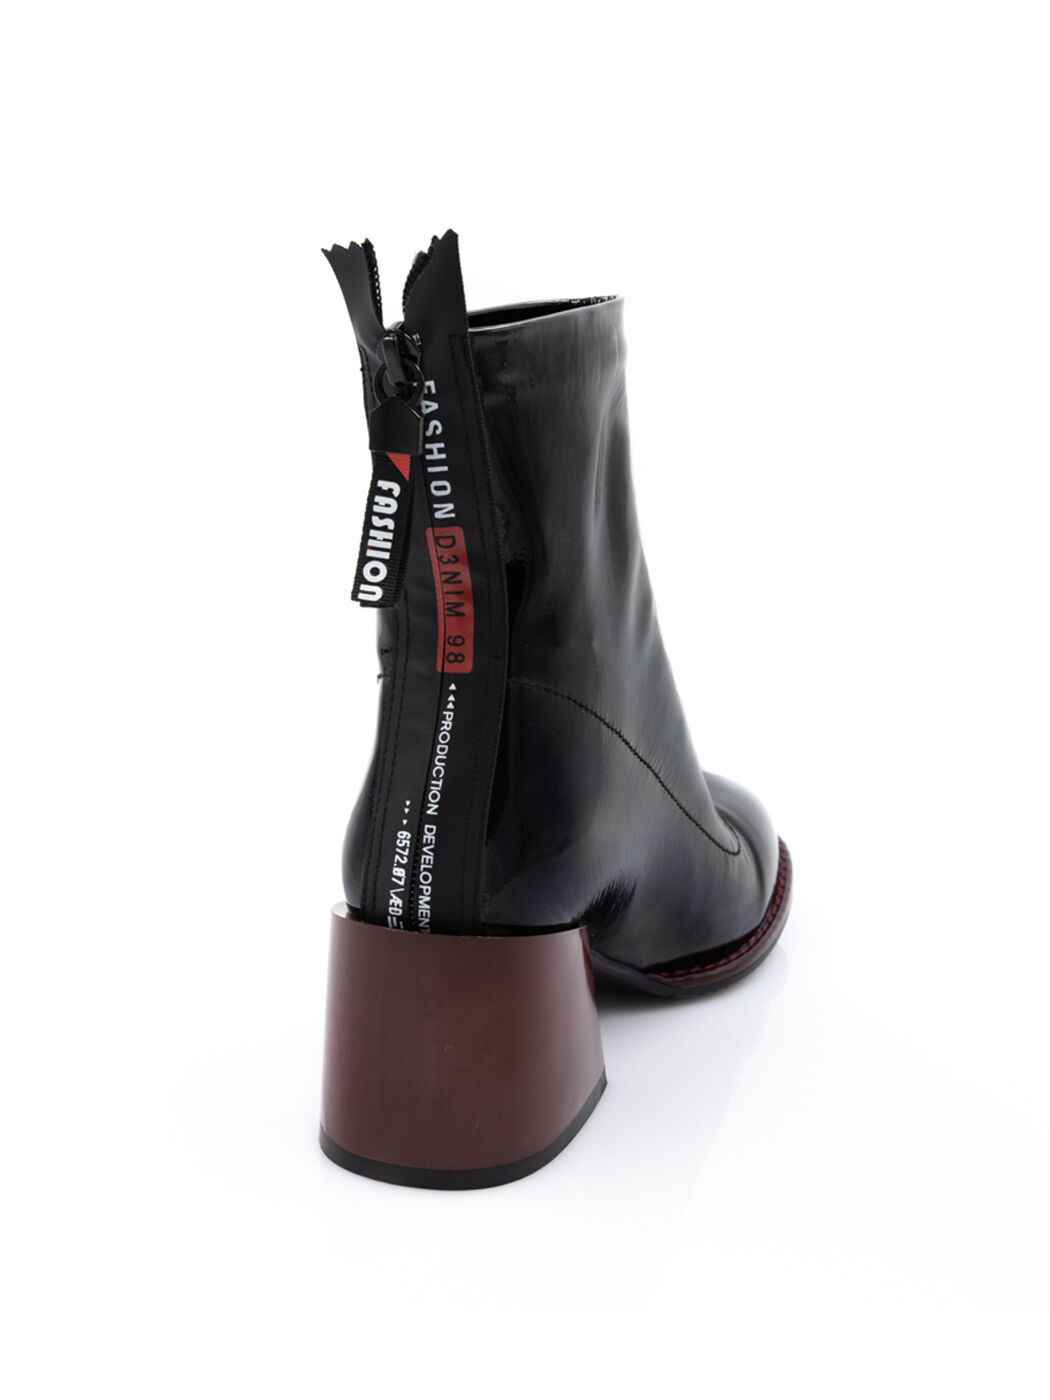 Ботинки женские черные искусственный лак каблук устойчивый демисезон вид 1